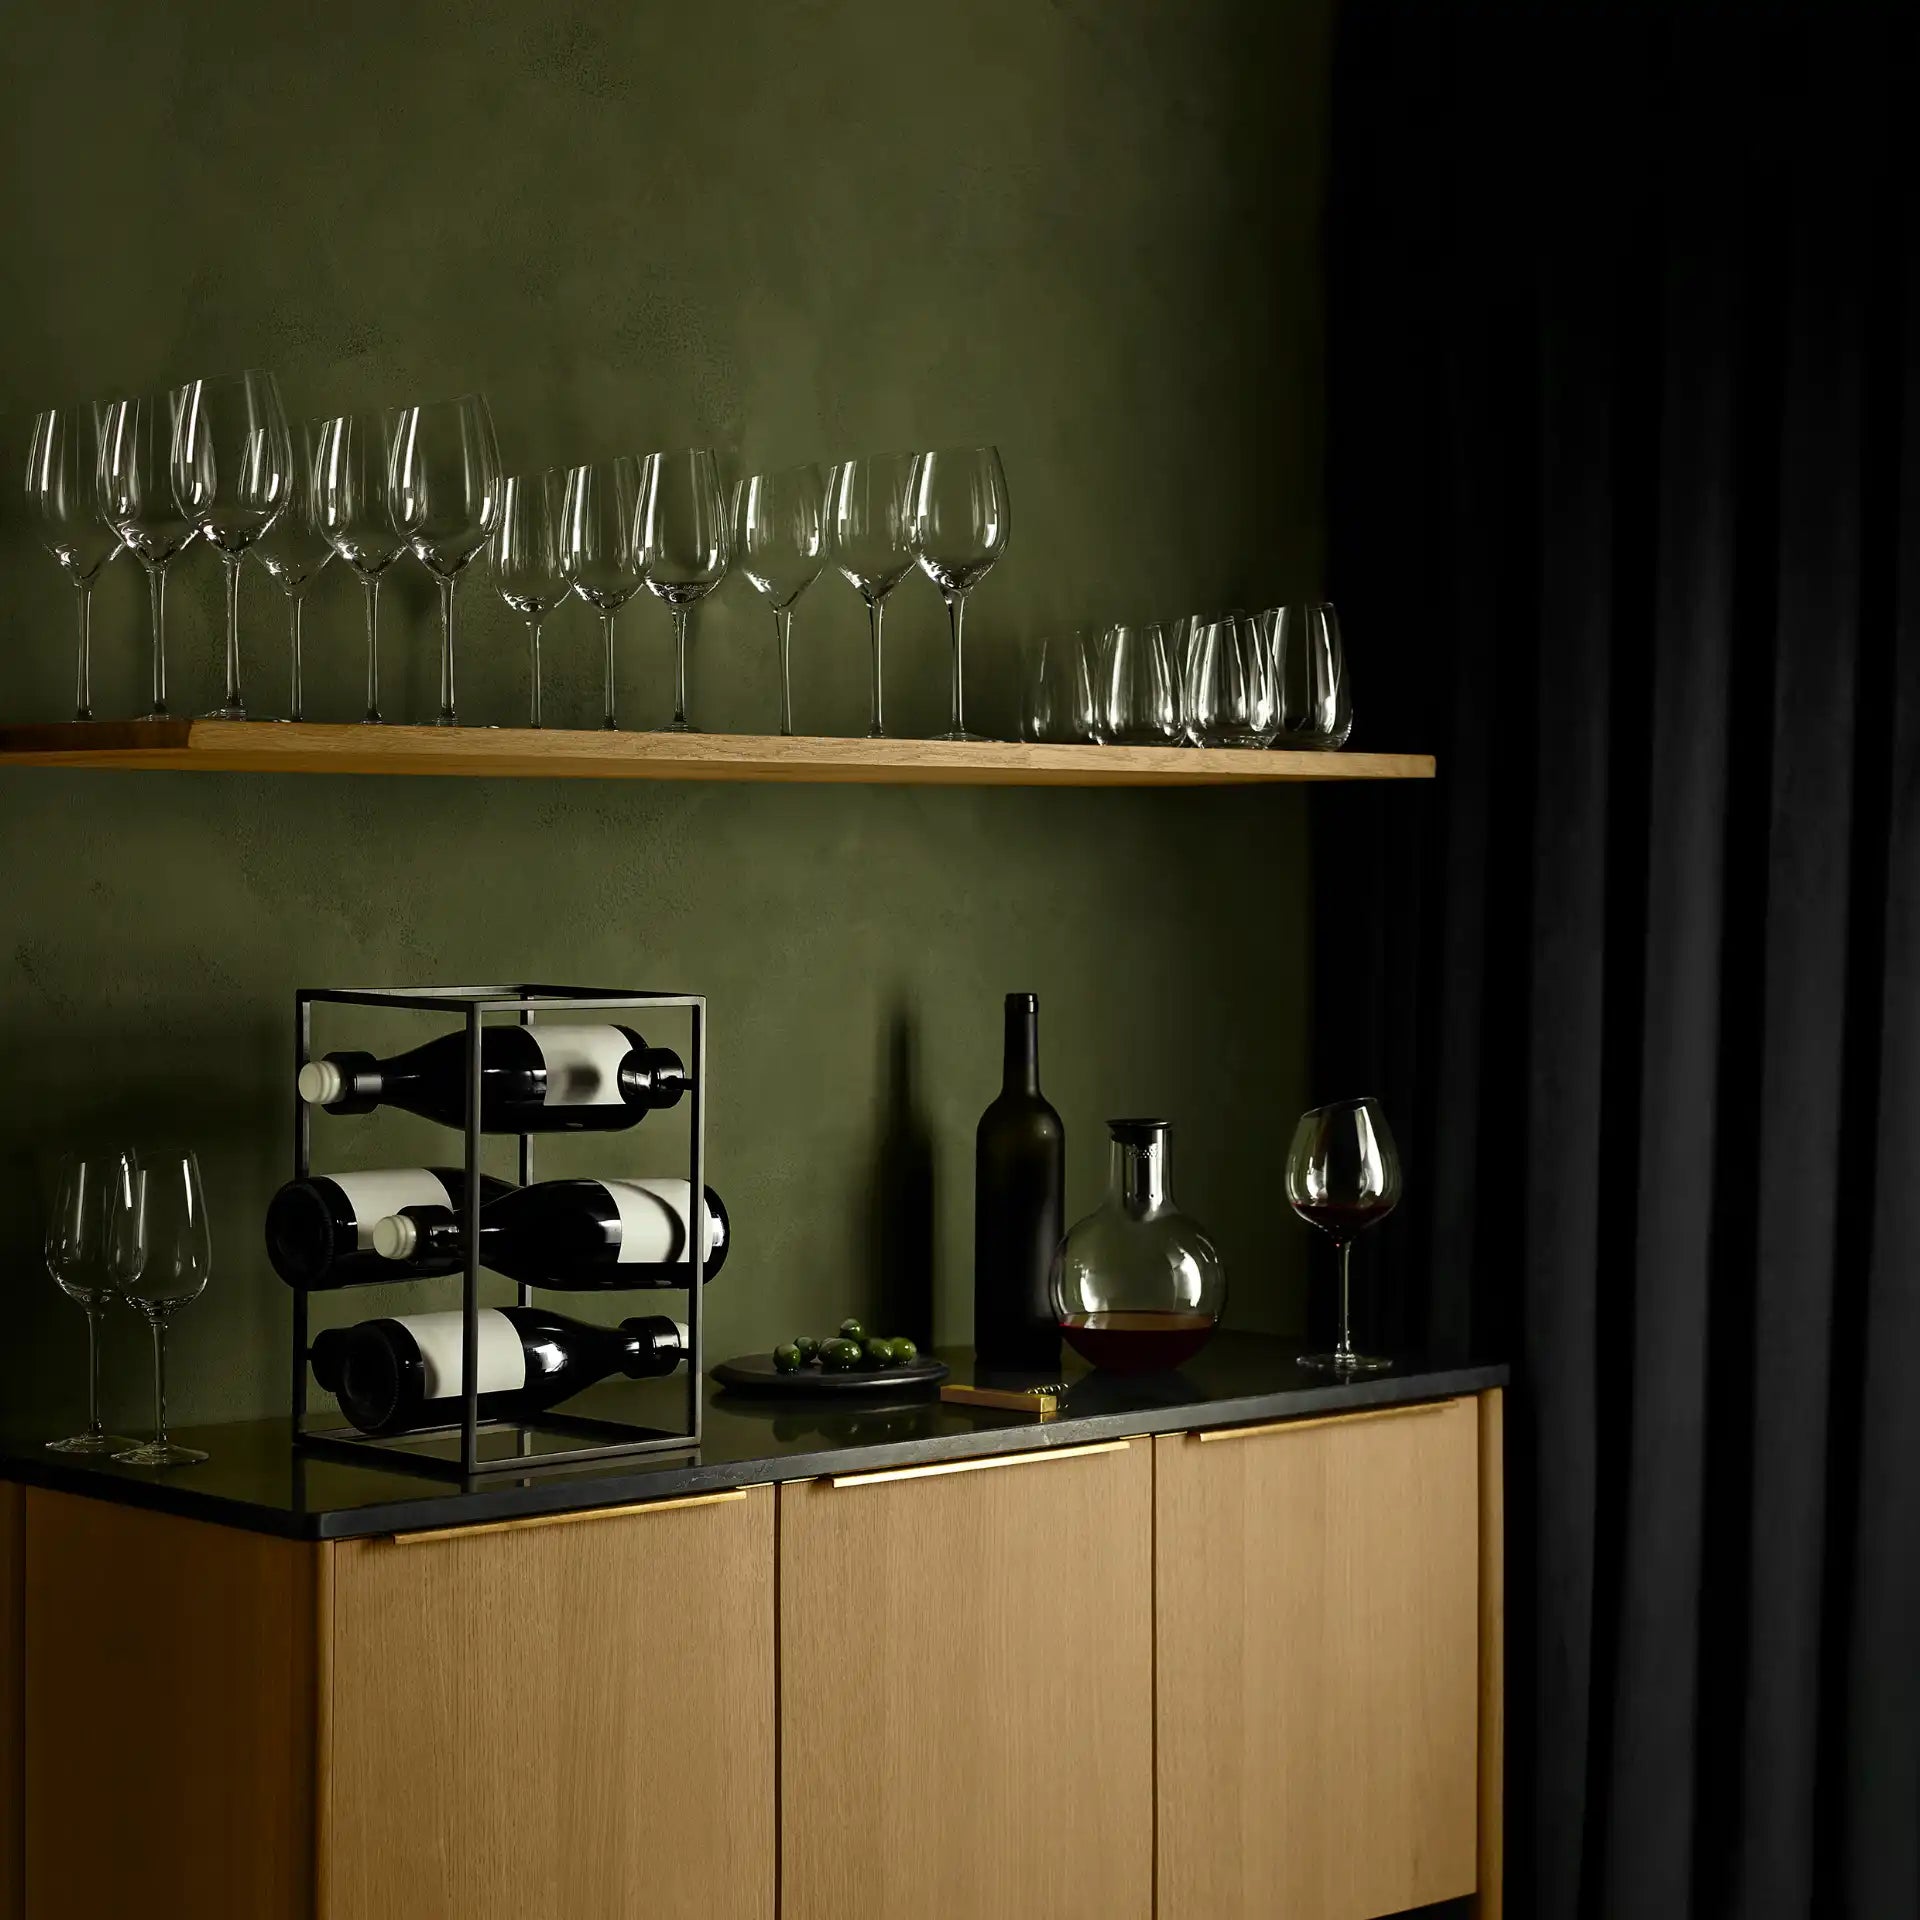 Eva Solo Red Wine Glass TRIO | Panik Design